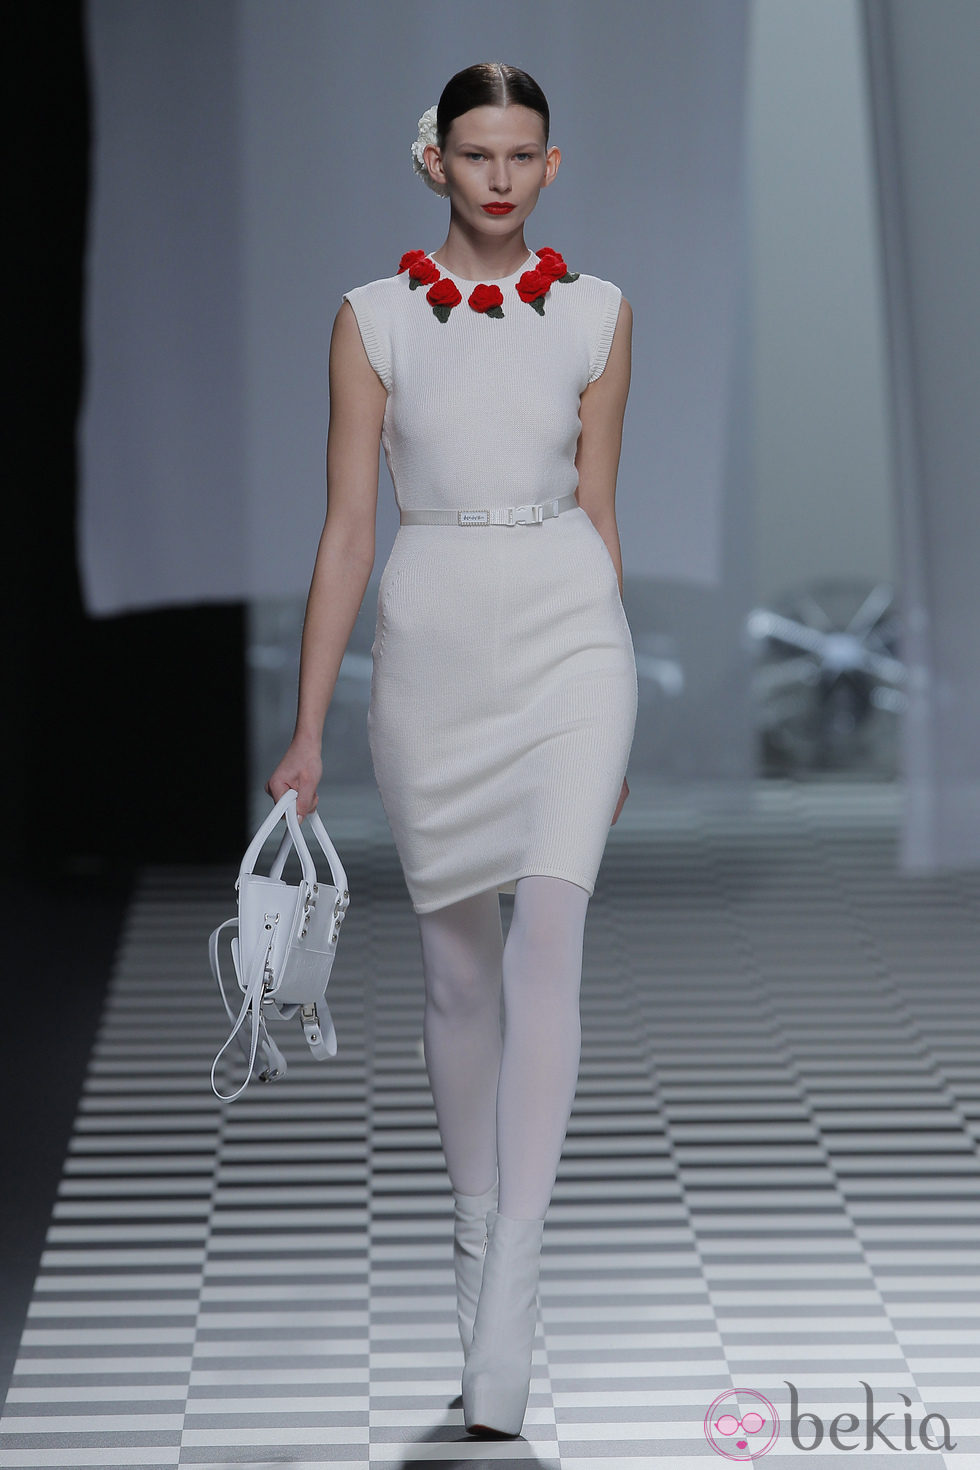 Vestido ceñido a la cintura de la colección otoño/invierno 2013/2014 de David Delfín en Madrid Fashion Week